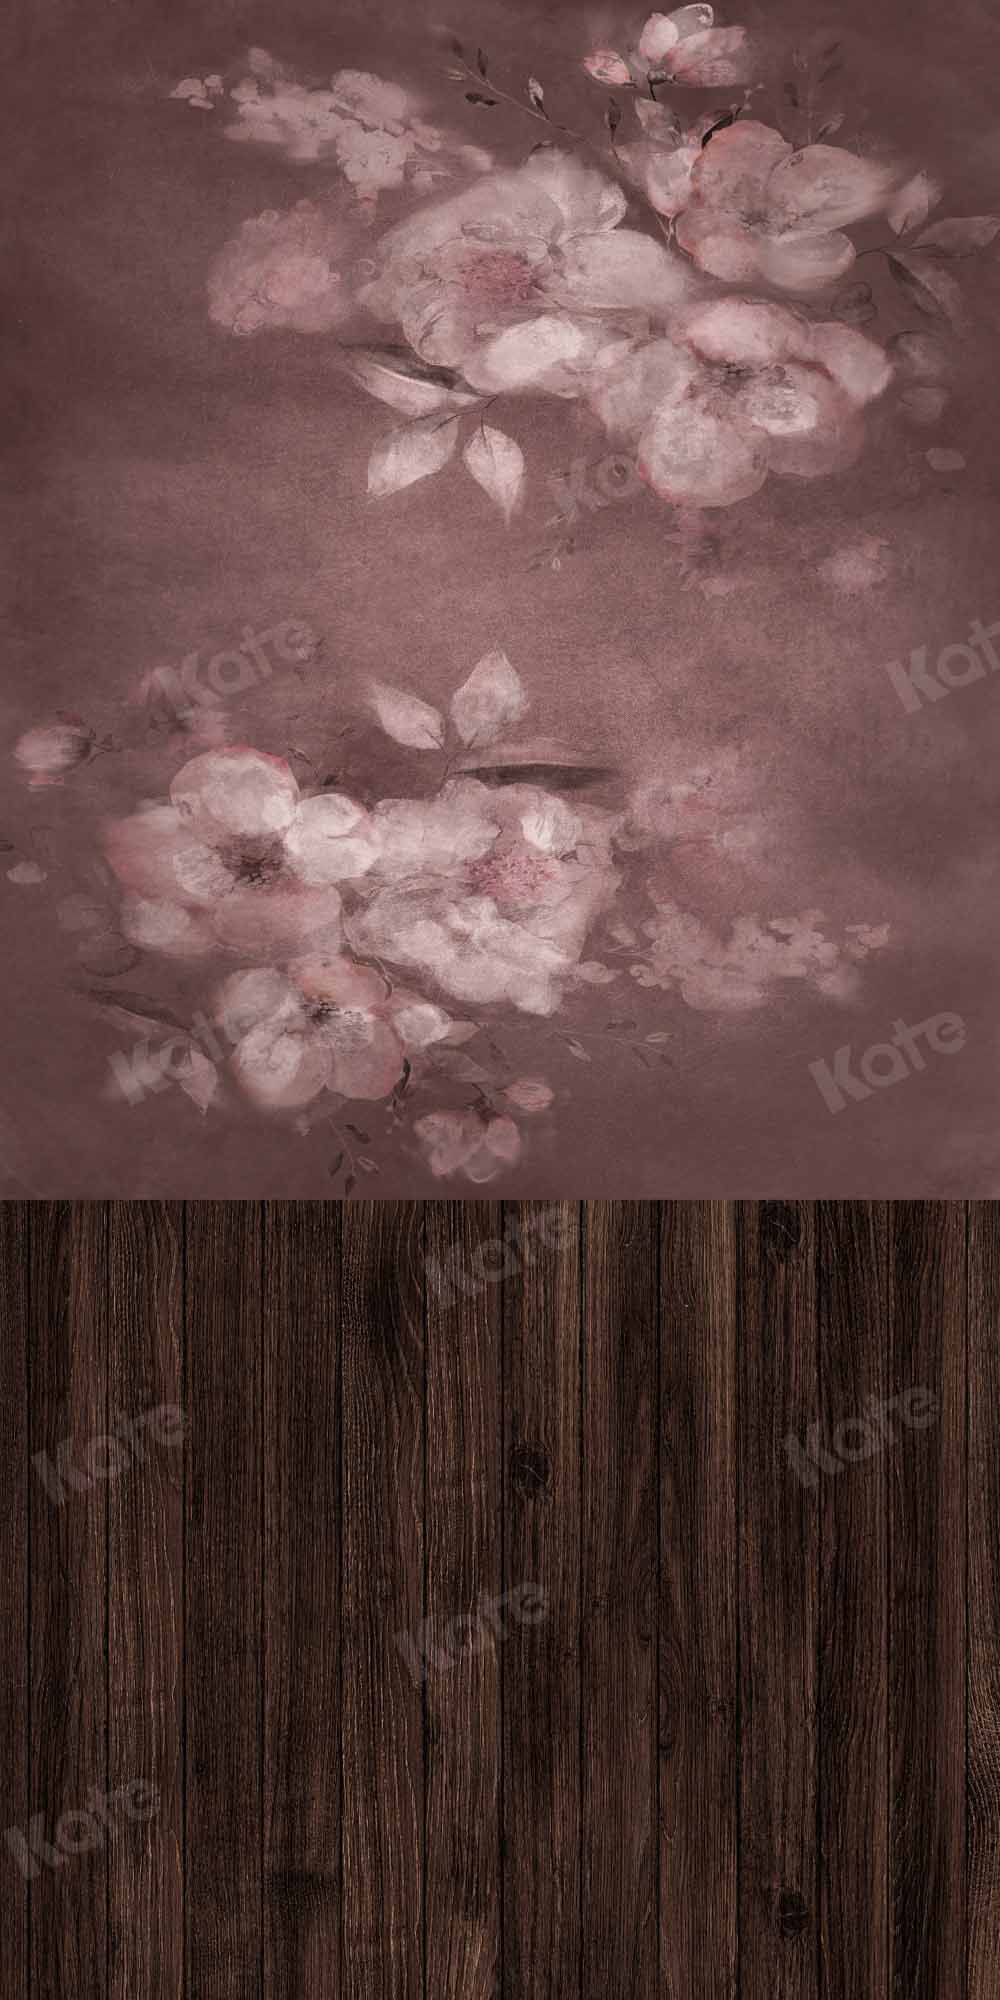 Kate balayage abstrait fleur toile de fond planche de bois couture conçue par Chain Photographie